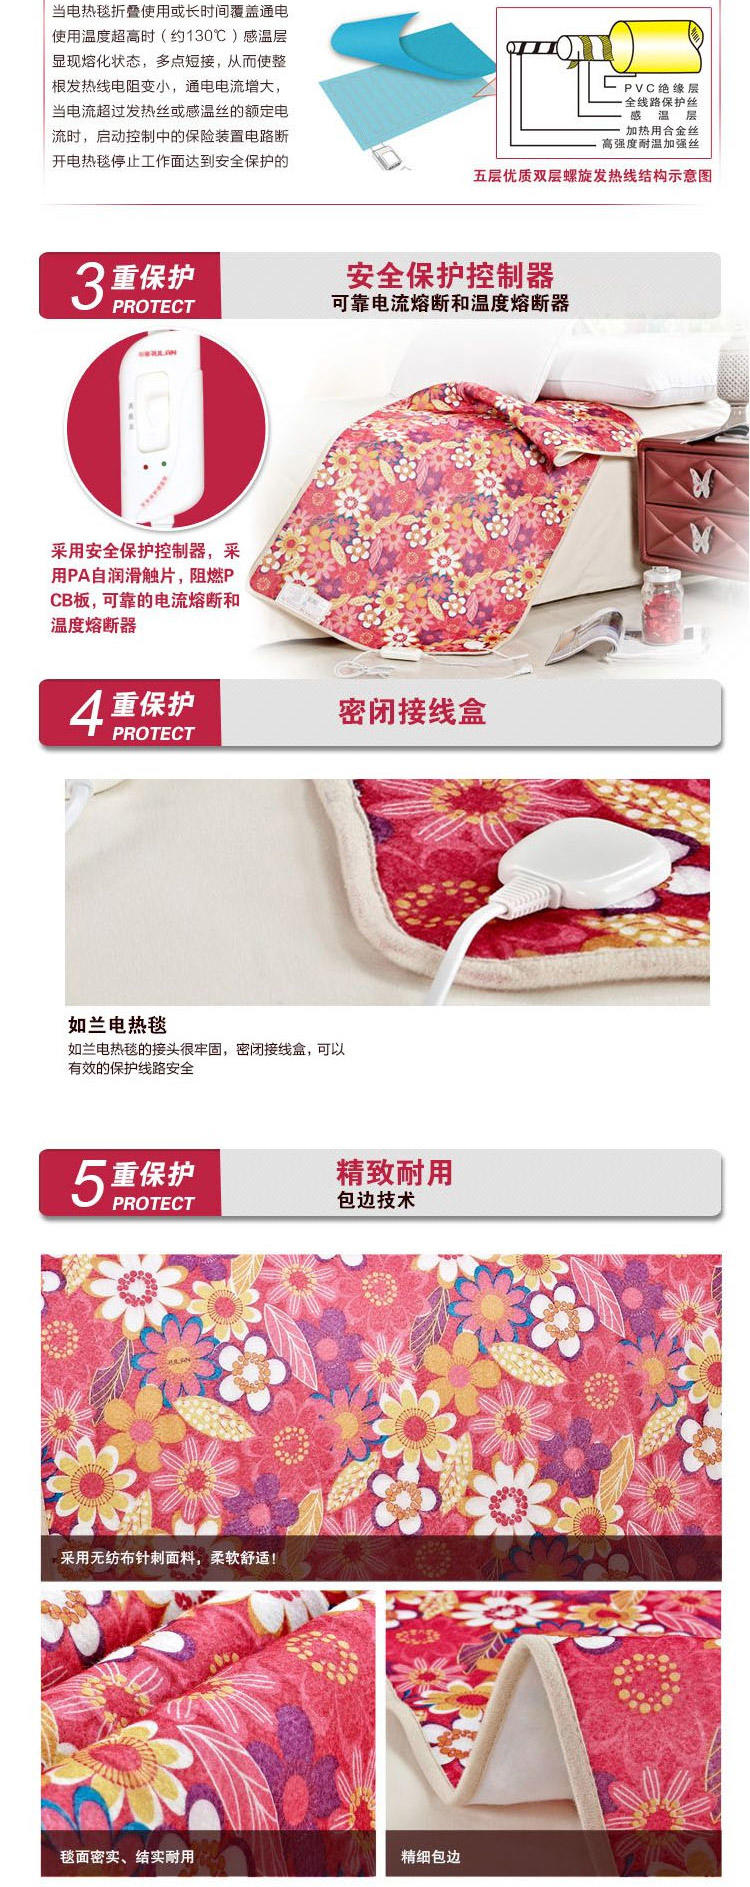 中国质造如兰全线路安全保护调温型印花单人电热毯81570  150*70 花型随机